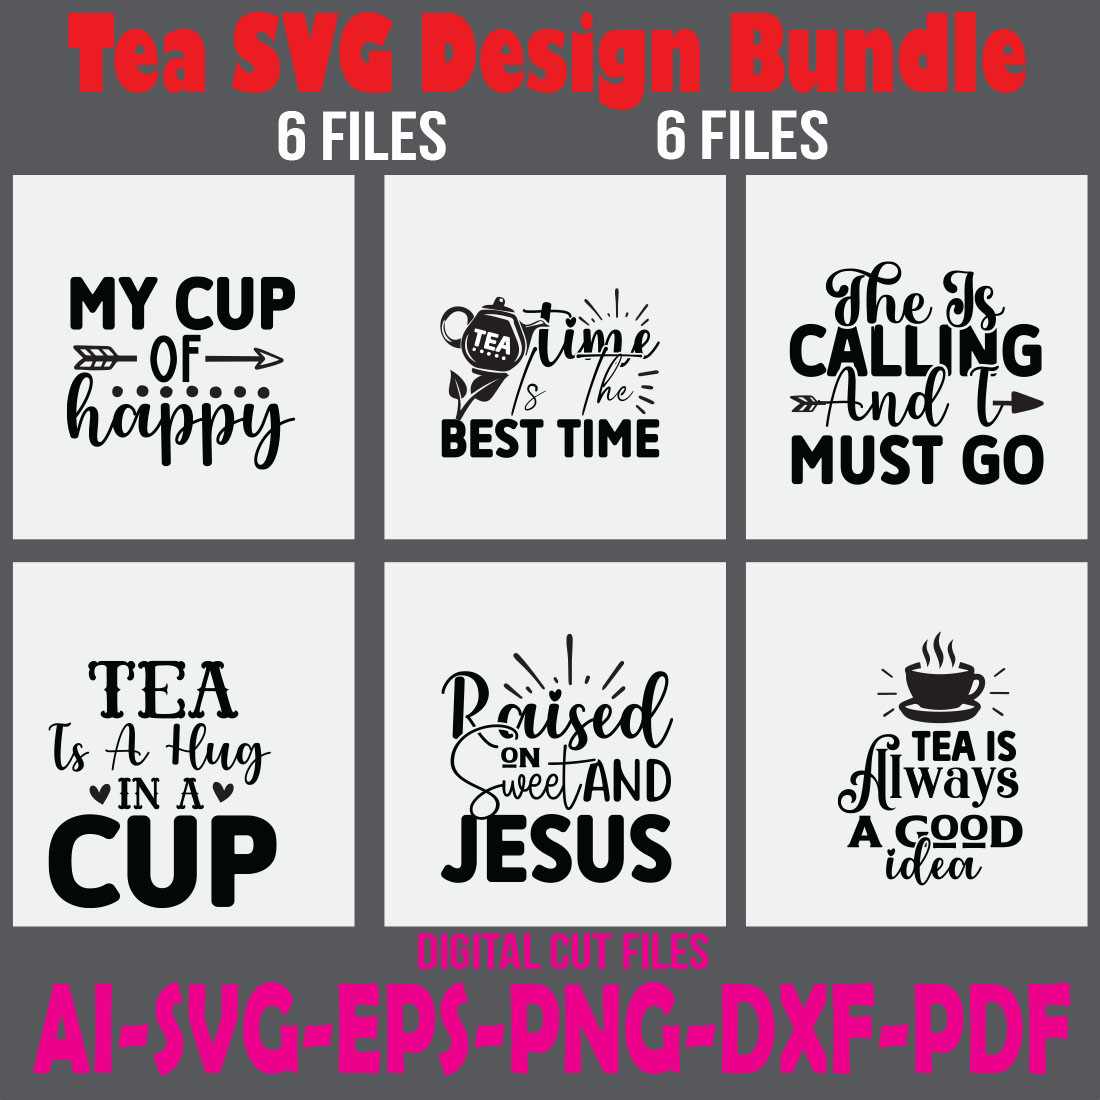 Tea SVG Design Bundle cover image.